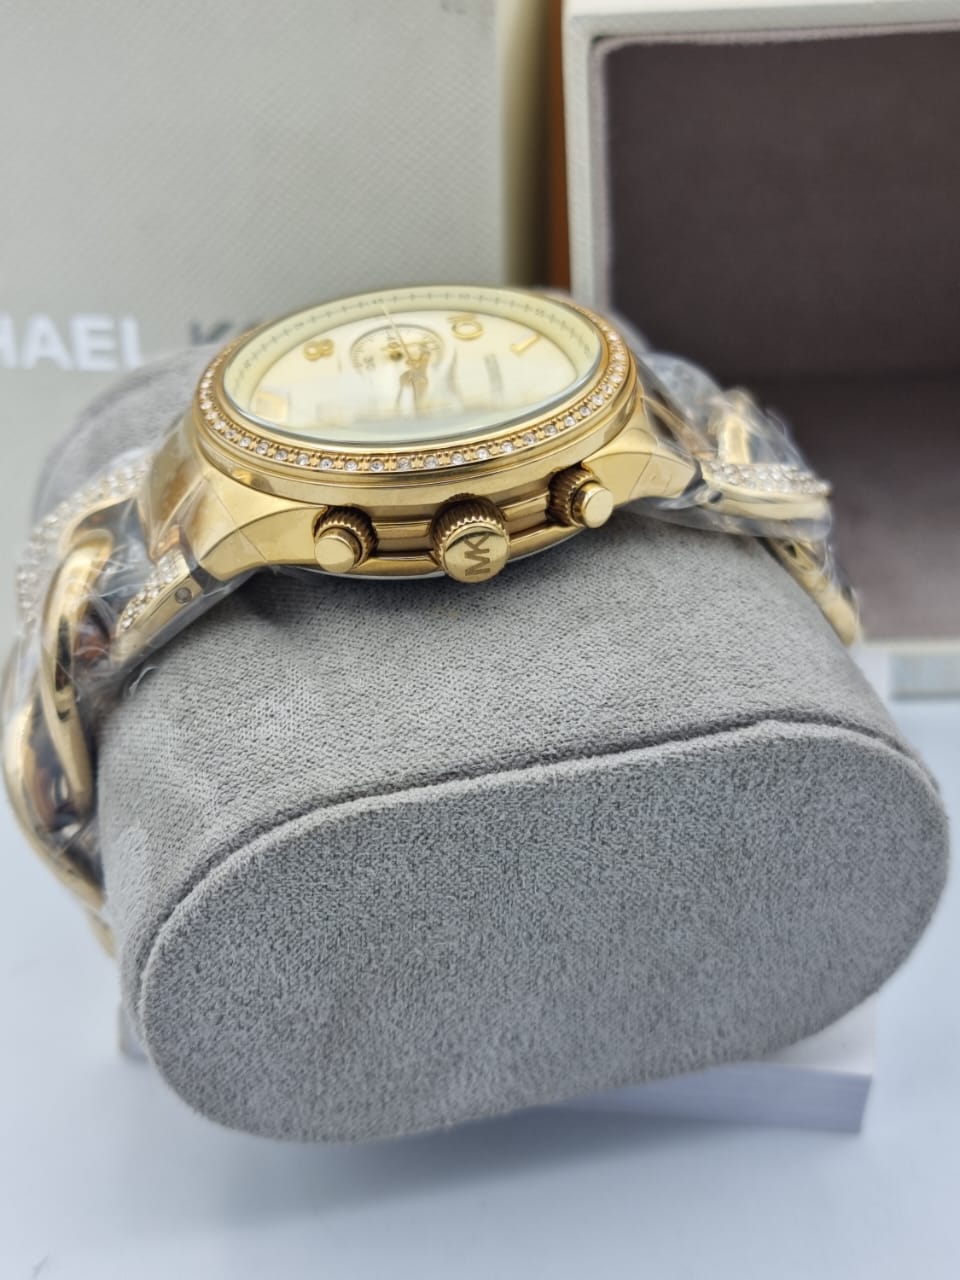 Michael Kors Women’s Quartz Stainless Steel Gold Dial 38mm Watch MK3150